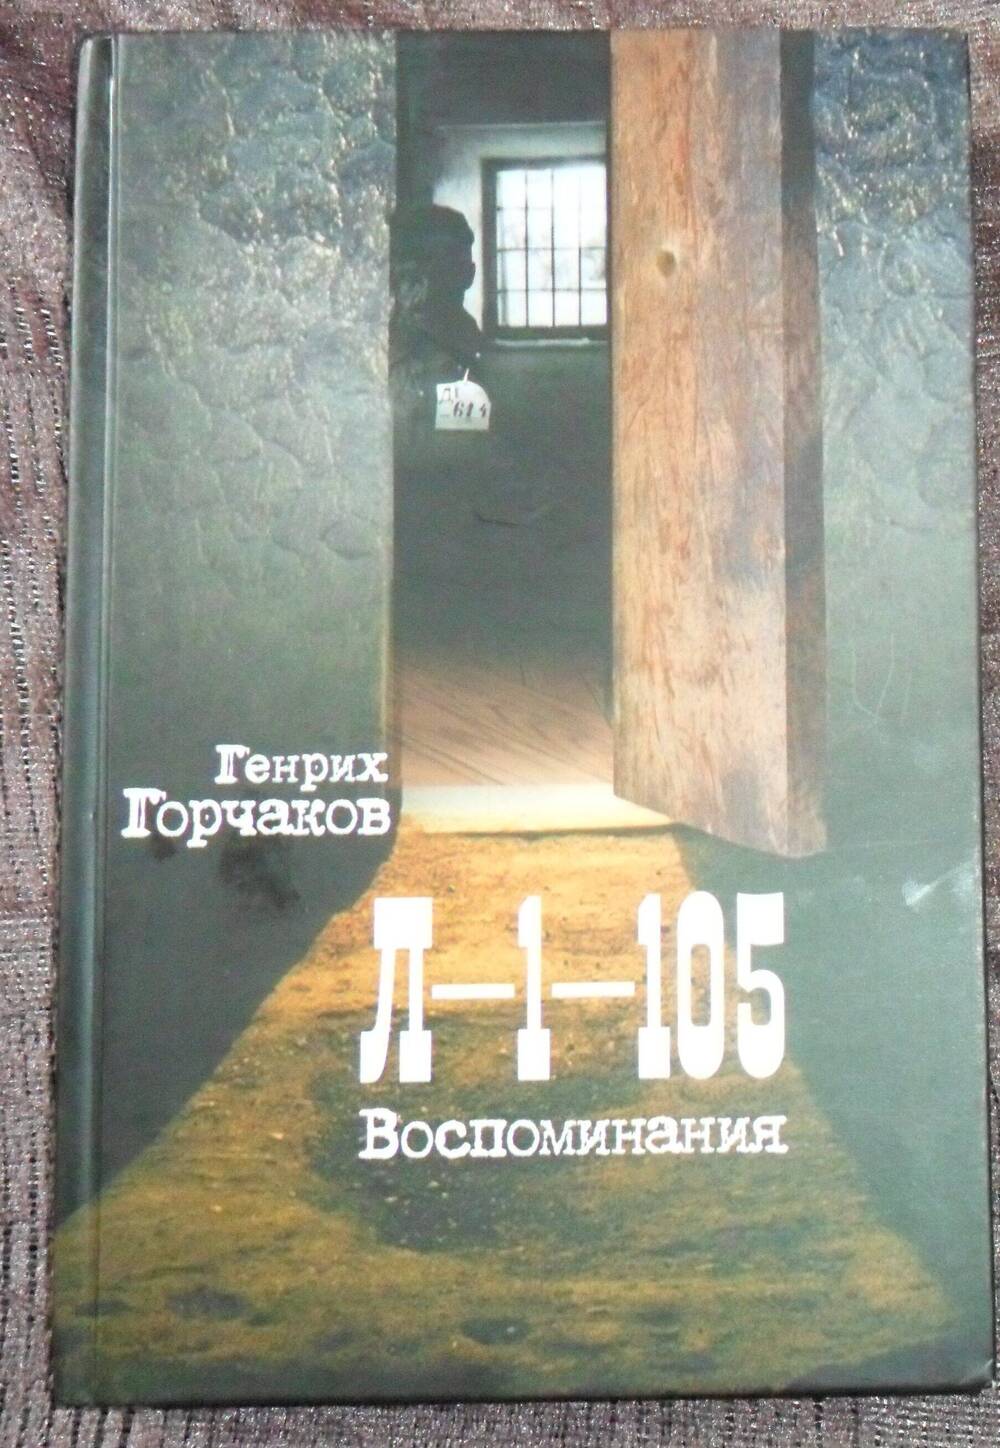 Книга Л-1-105. Воспоминания Генрих Горчаков. Москва Санкт Петербург. 2009 г.